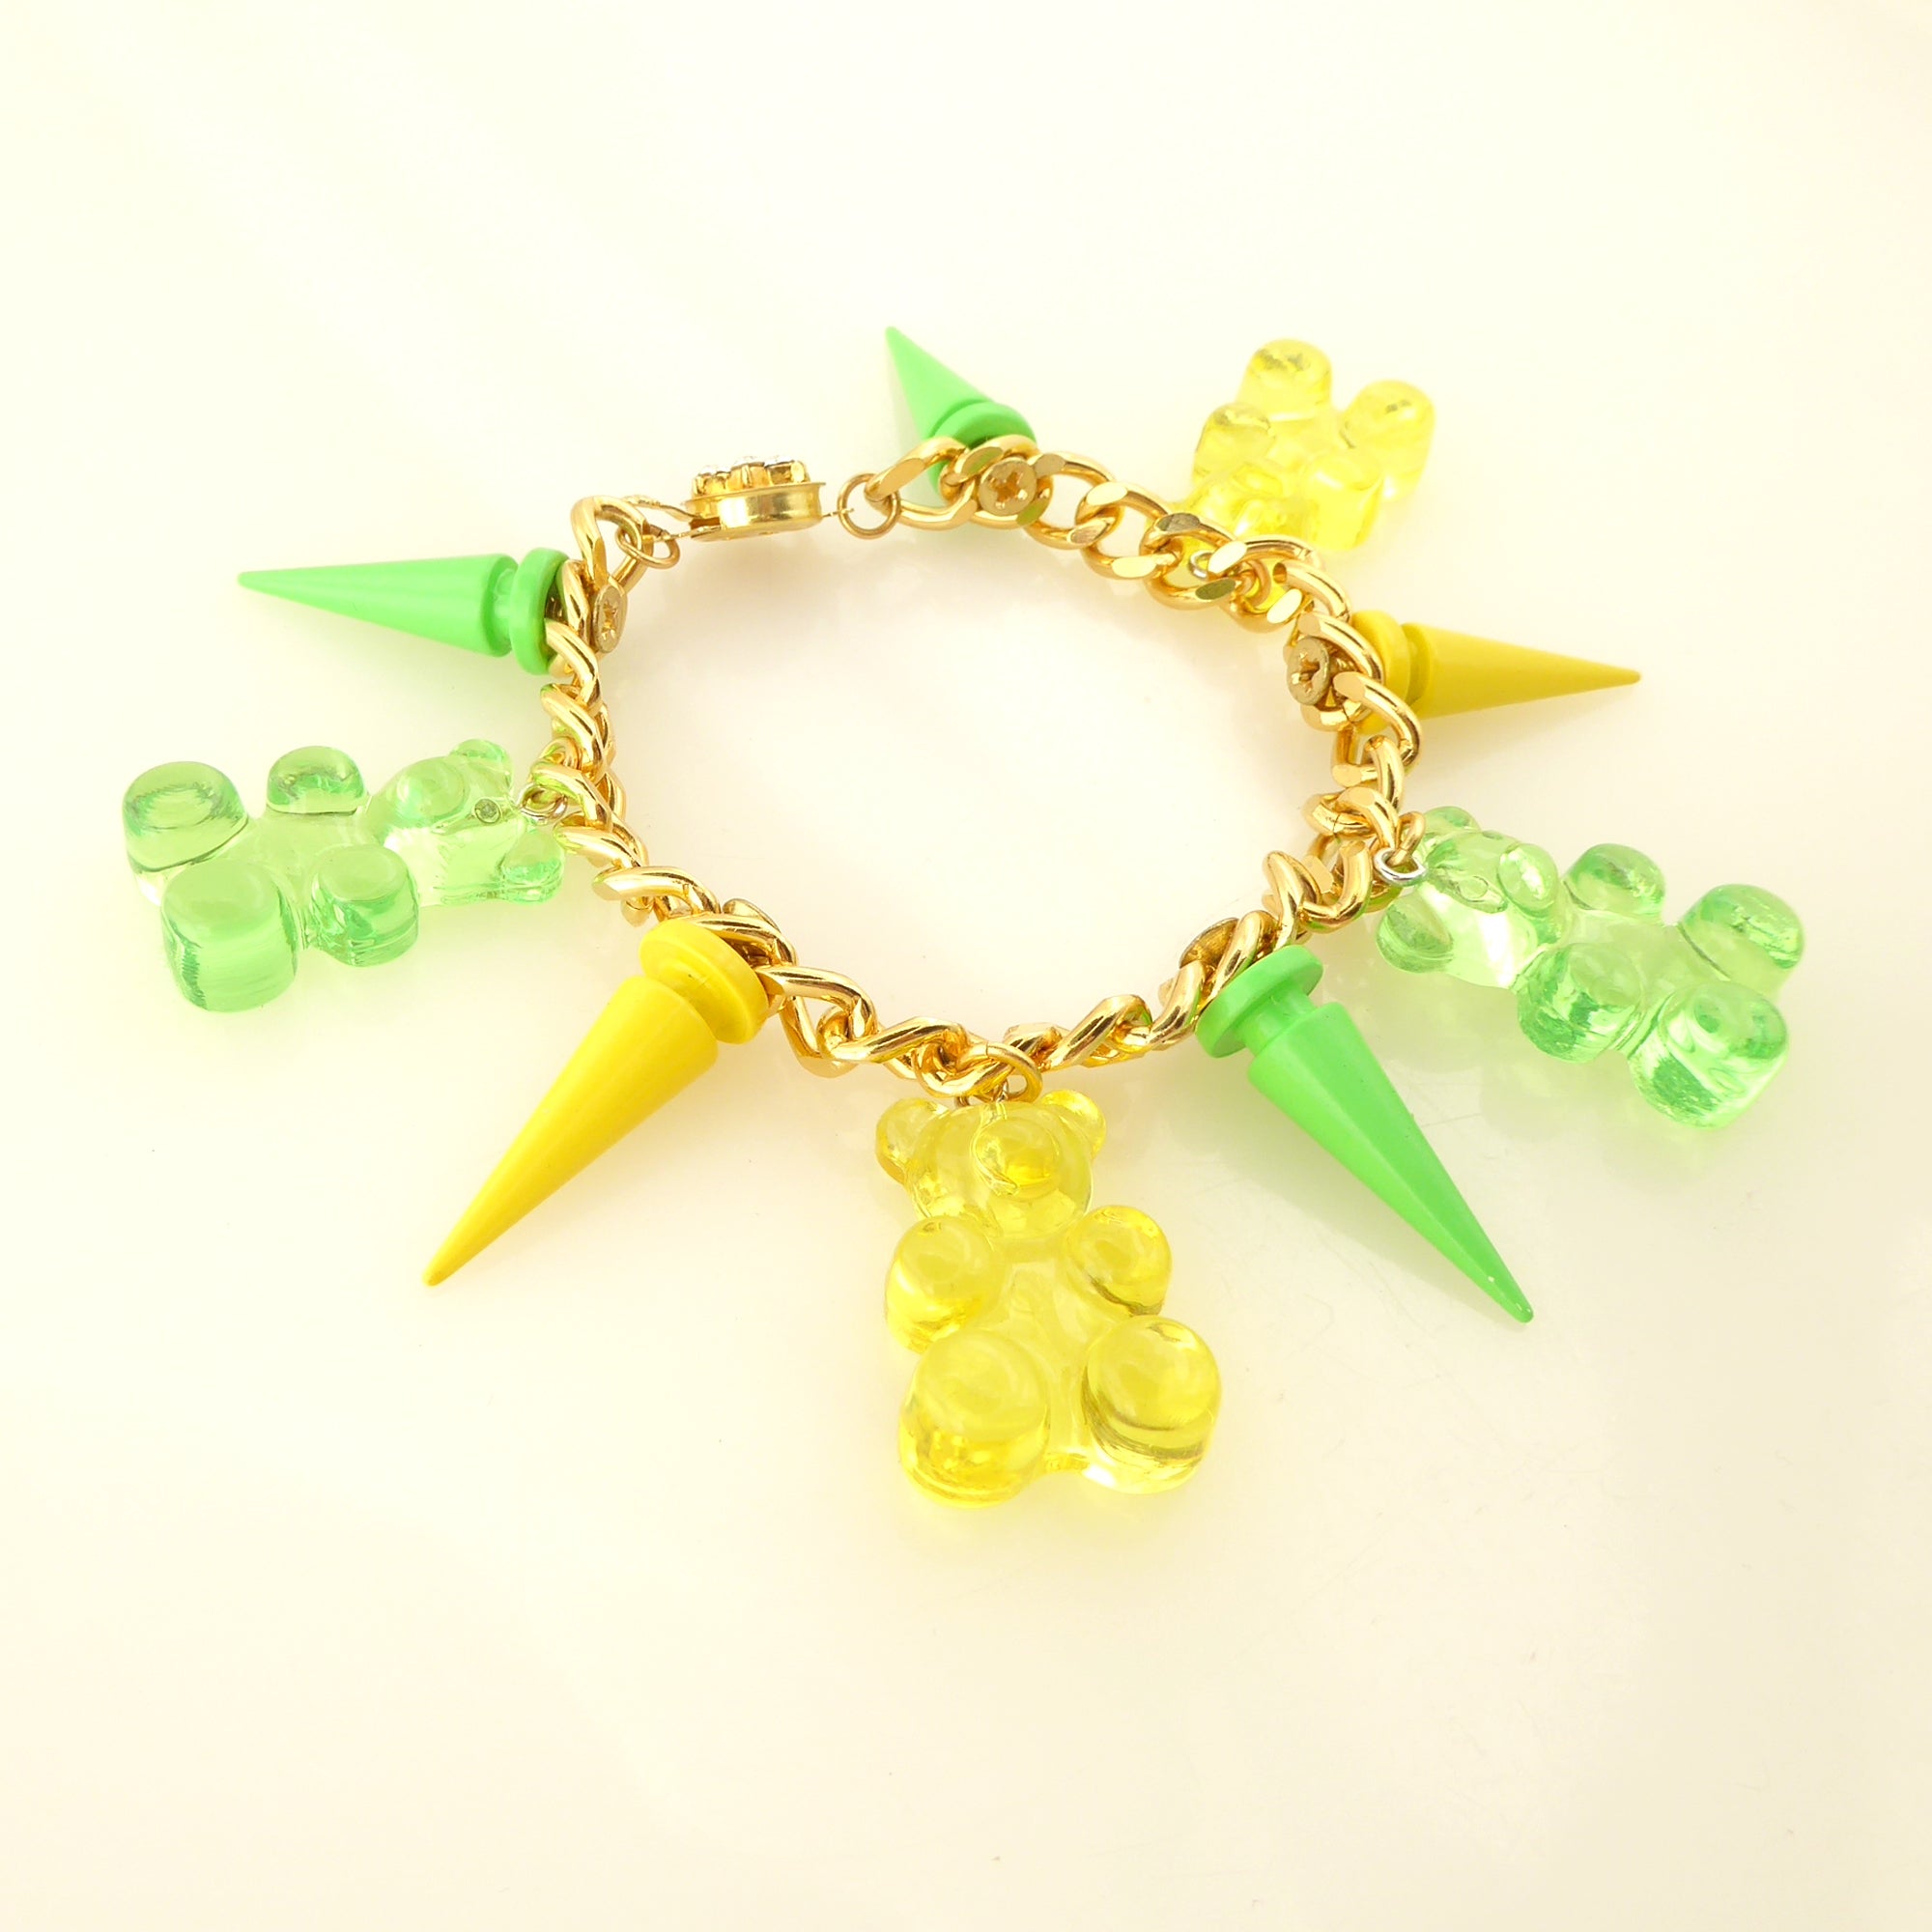 Gummy bear spike bracelet by Jenny Dayco 2